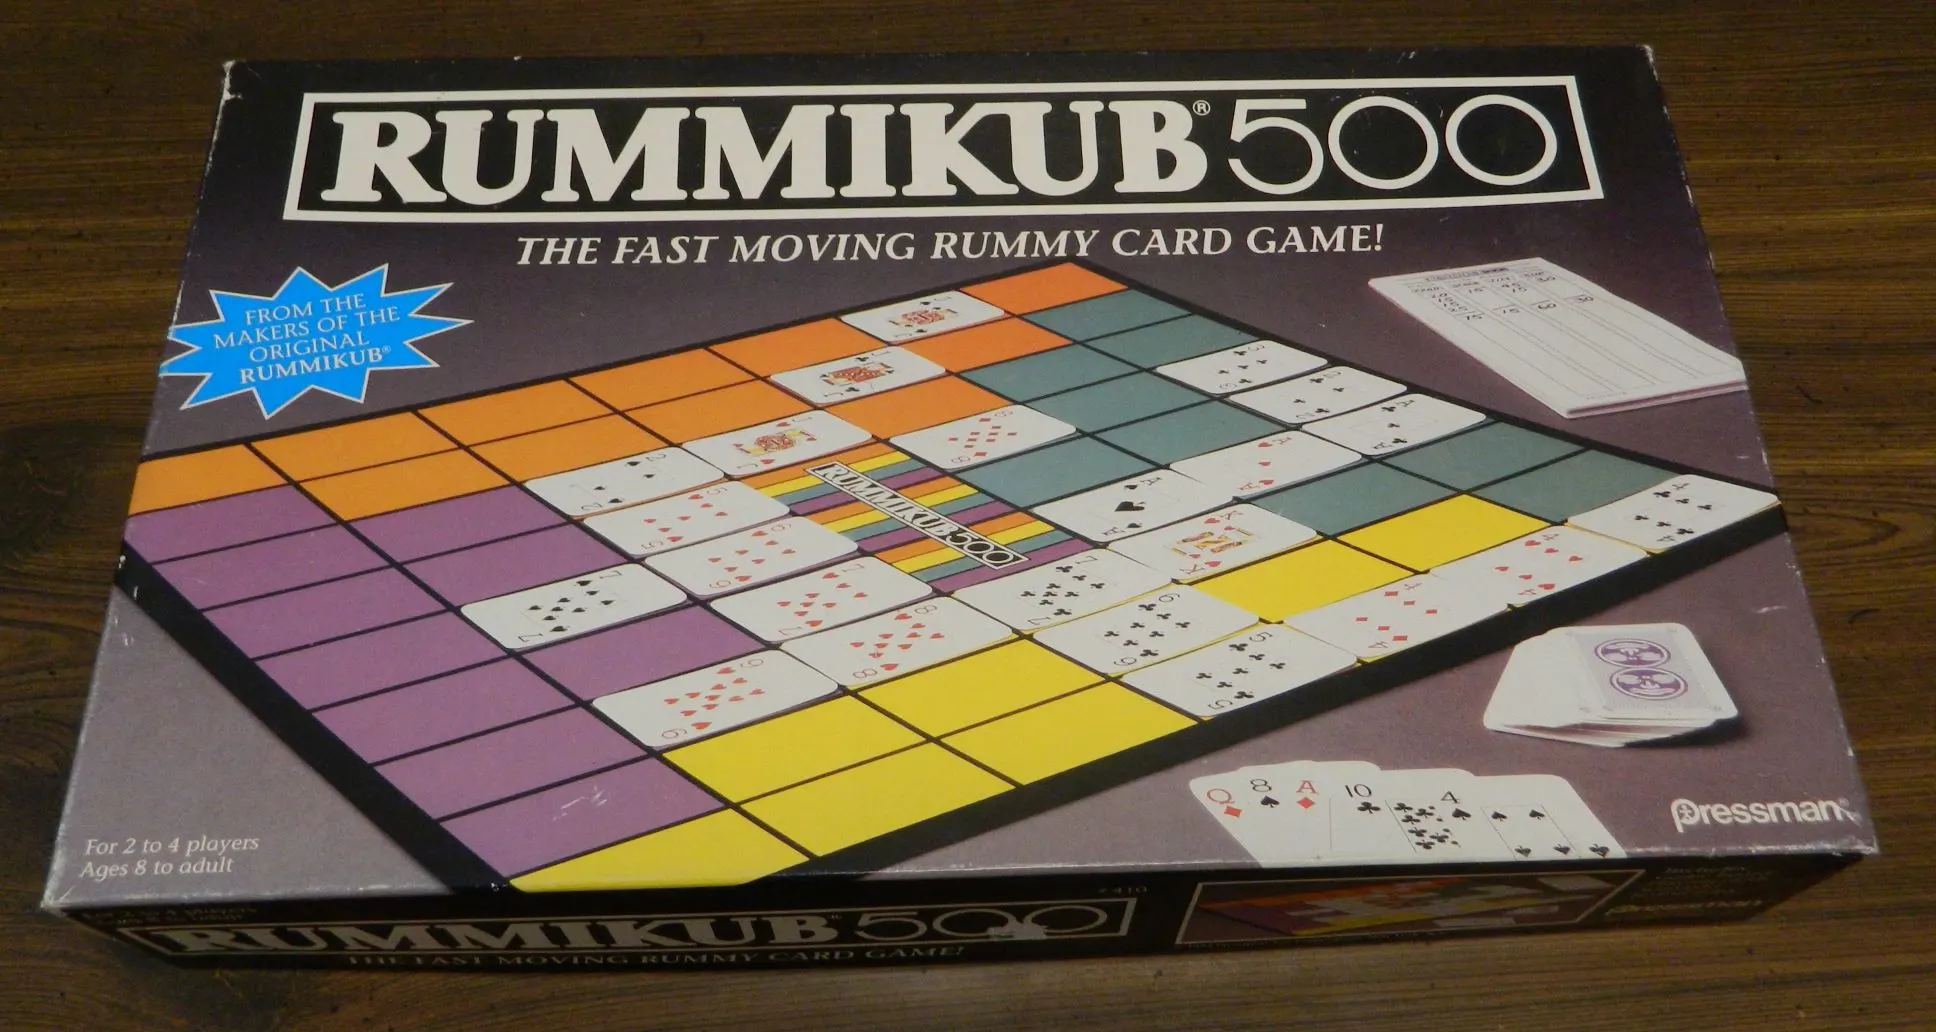 Box for Rummikub 500